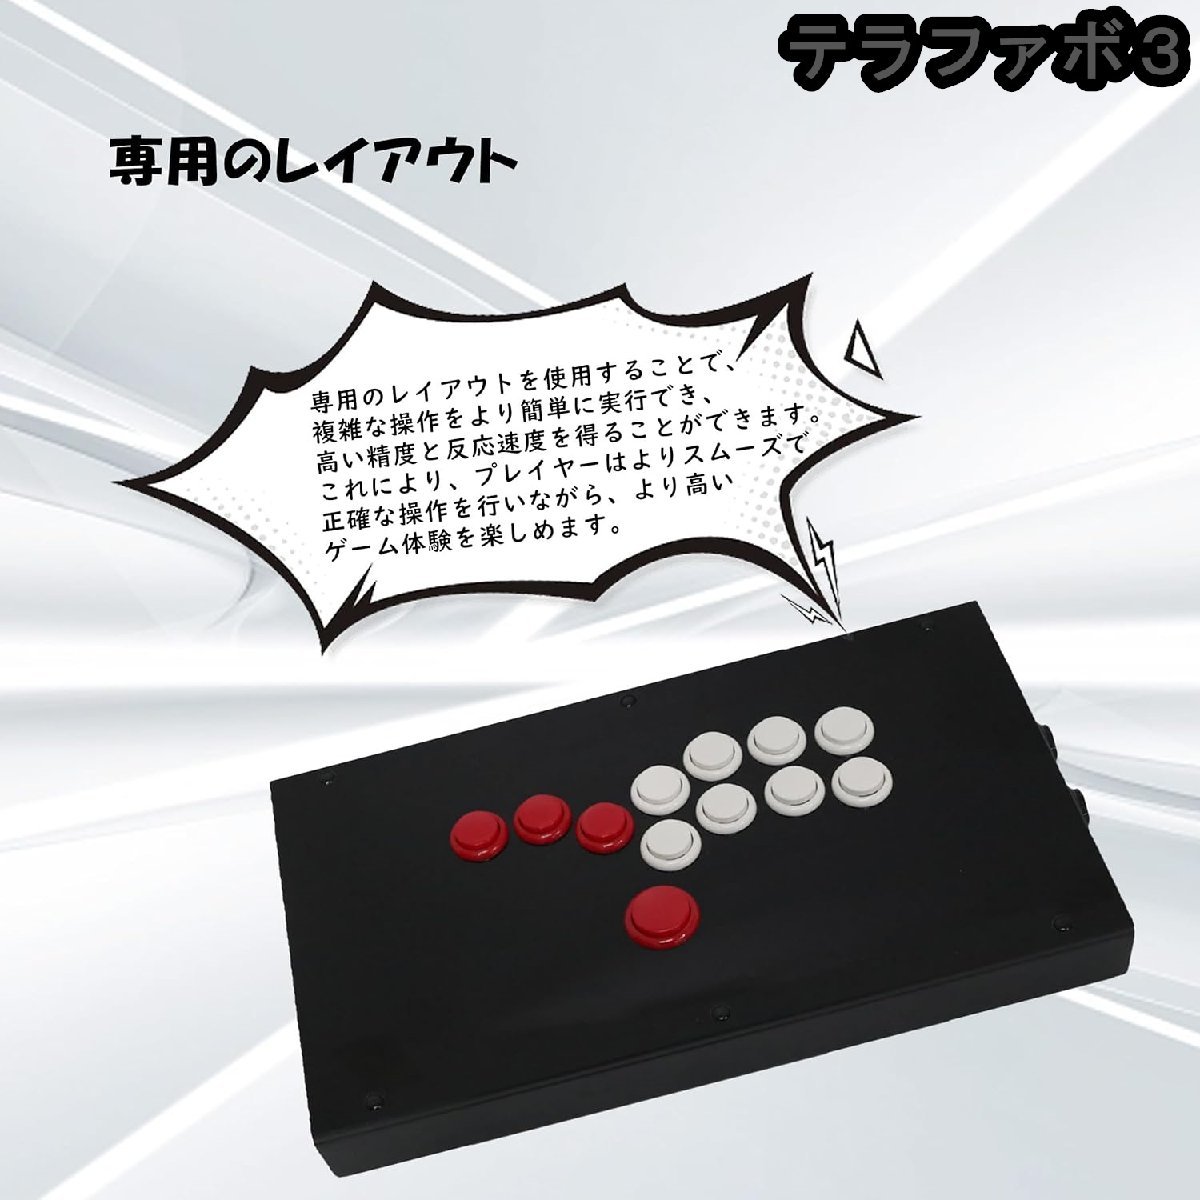 超薄型オールボタン HIT スタイルアーケードジョイスティックファイトスティックゲームコントローラー PC用 (クラシックなボタン)_画像2